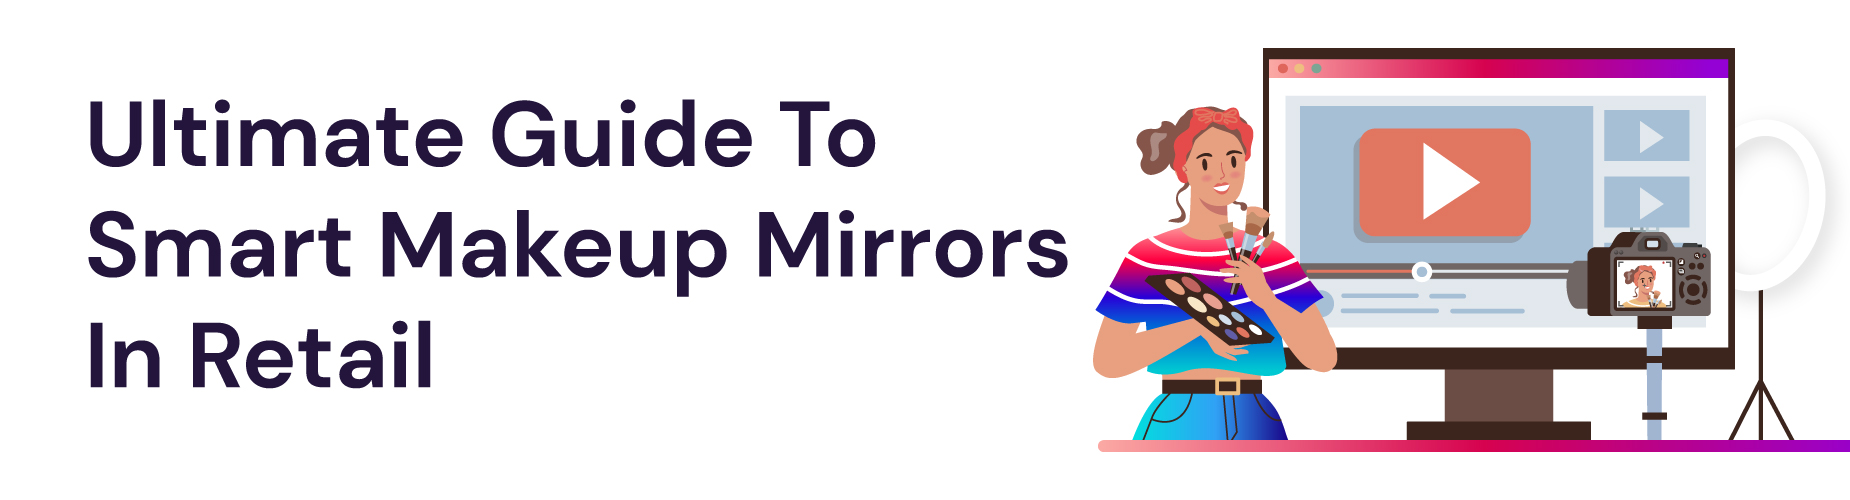 smart makeup mirror tutorial